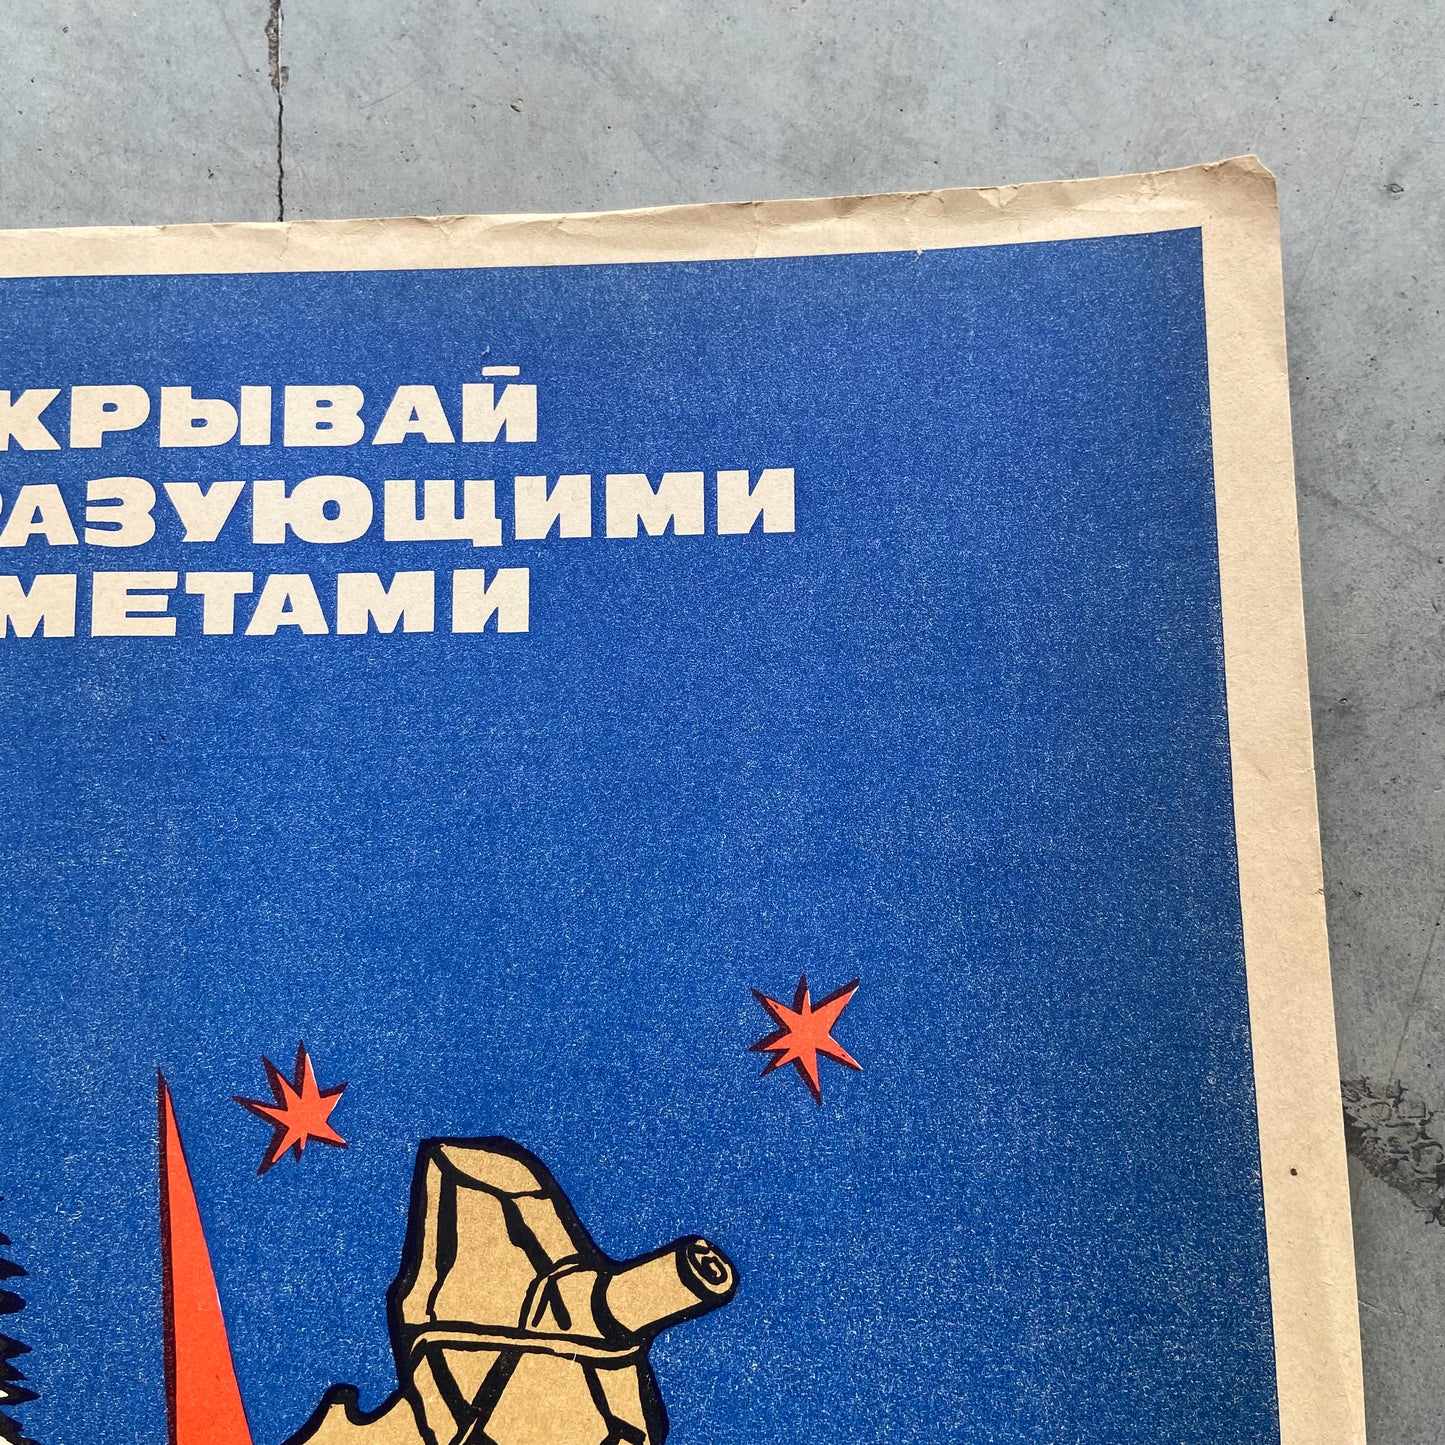 1982 Soviet Work Safety Poster #P1165 - 17" x 23"